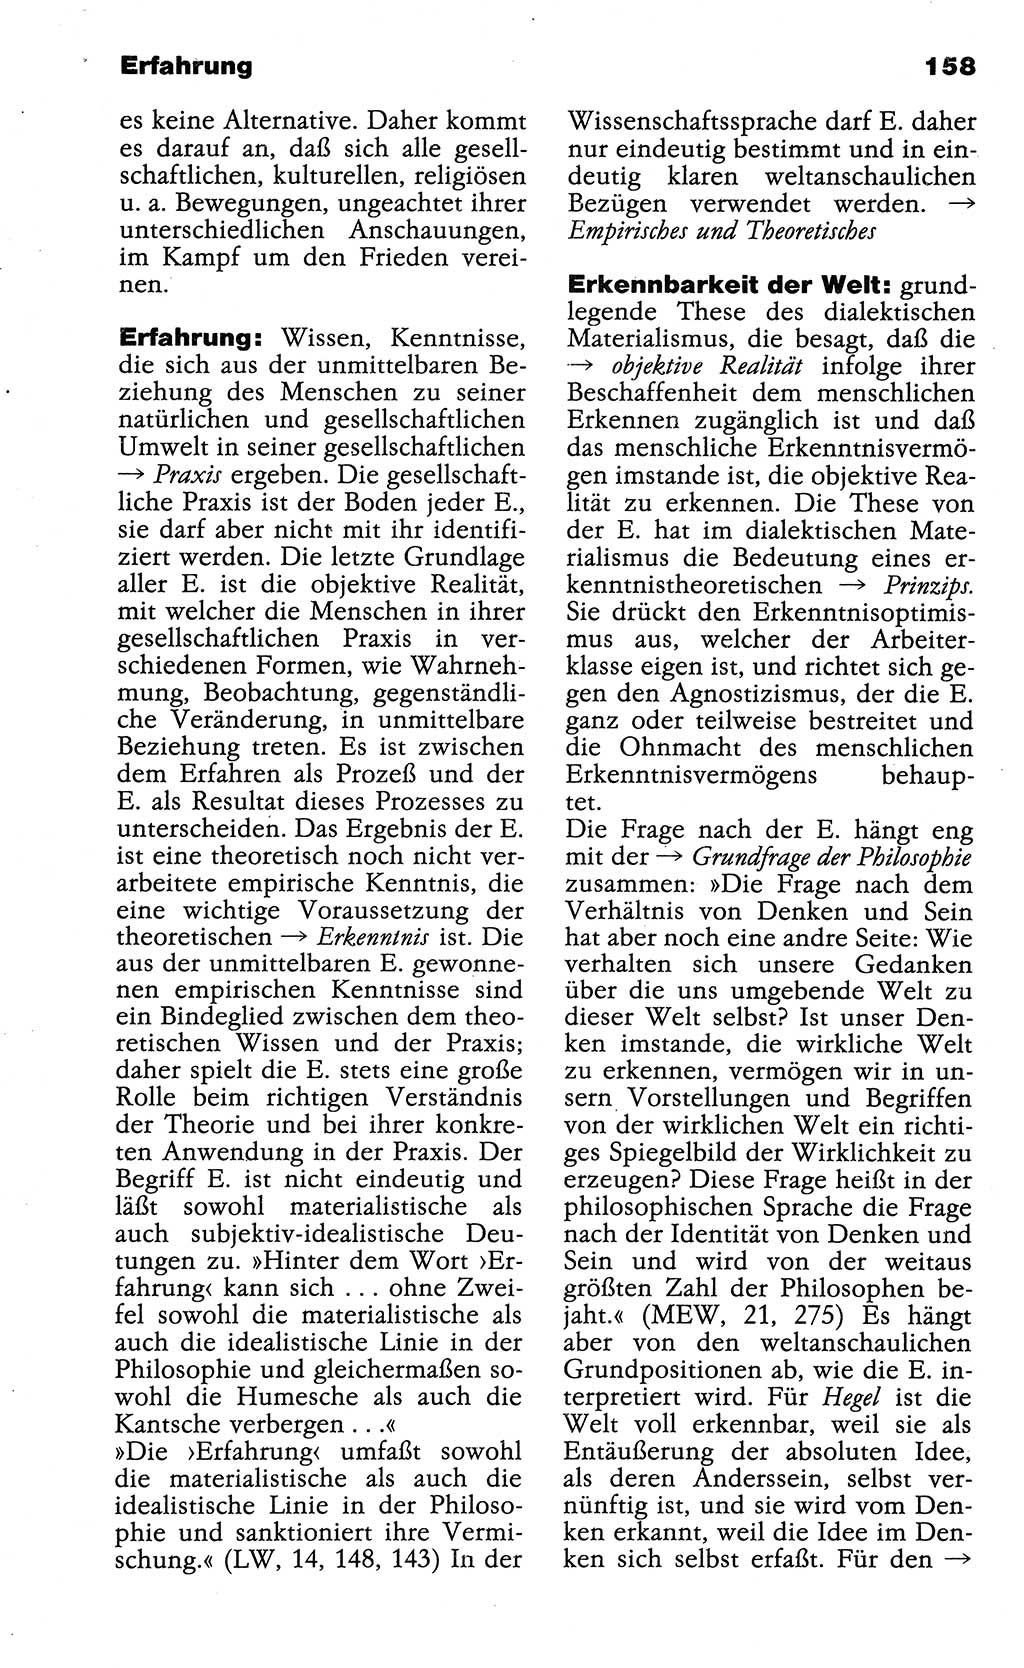 Wörterbuch der marxistisch-leninistischen Philosophie [Deutsche Demokratische Republik (DDR)] 1985, Seite 158 (Wb. ML Phil. DDR 1985, S. 158)